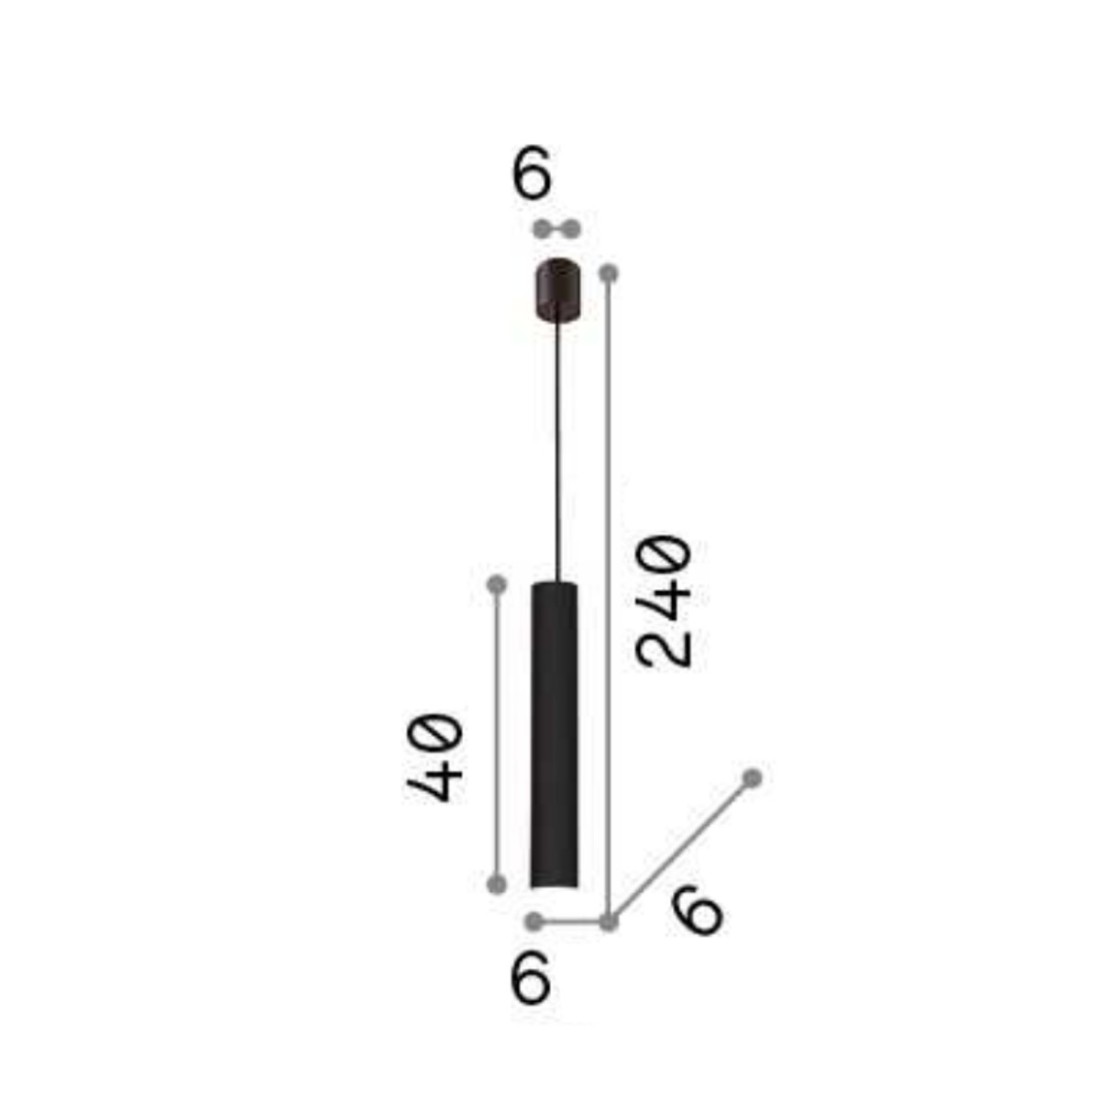 Suspension en métal cylindrique noir ou blanc mat., GU10, led.